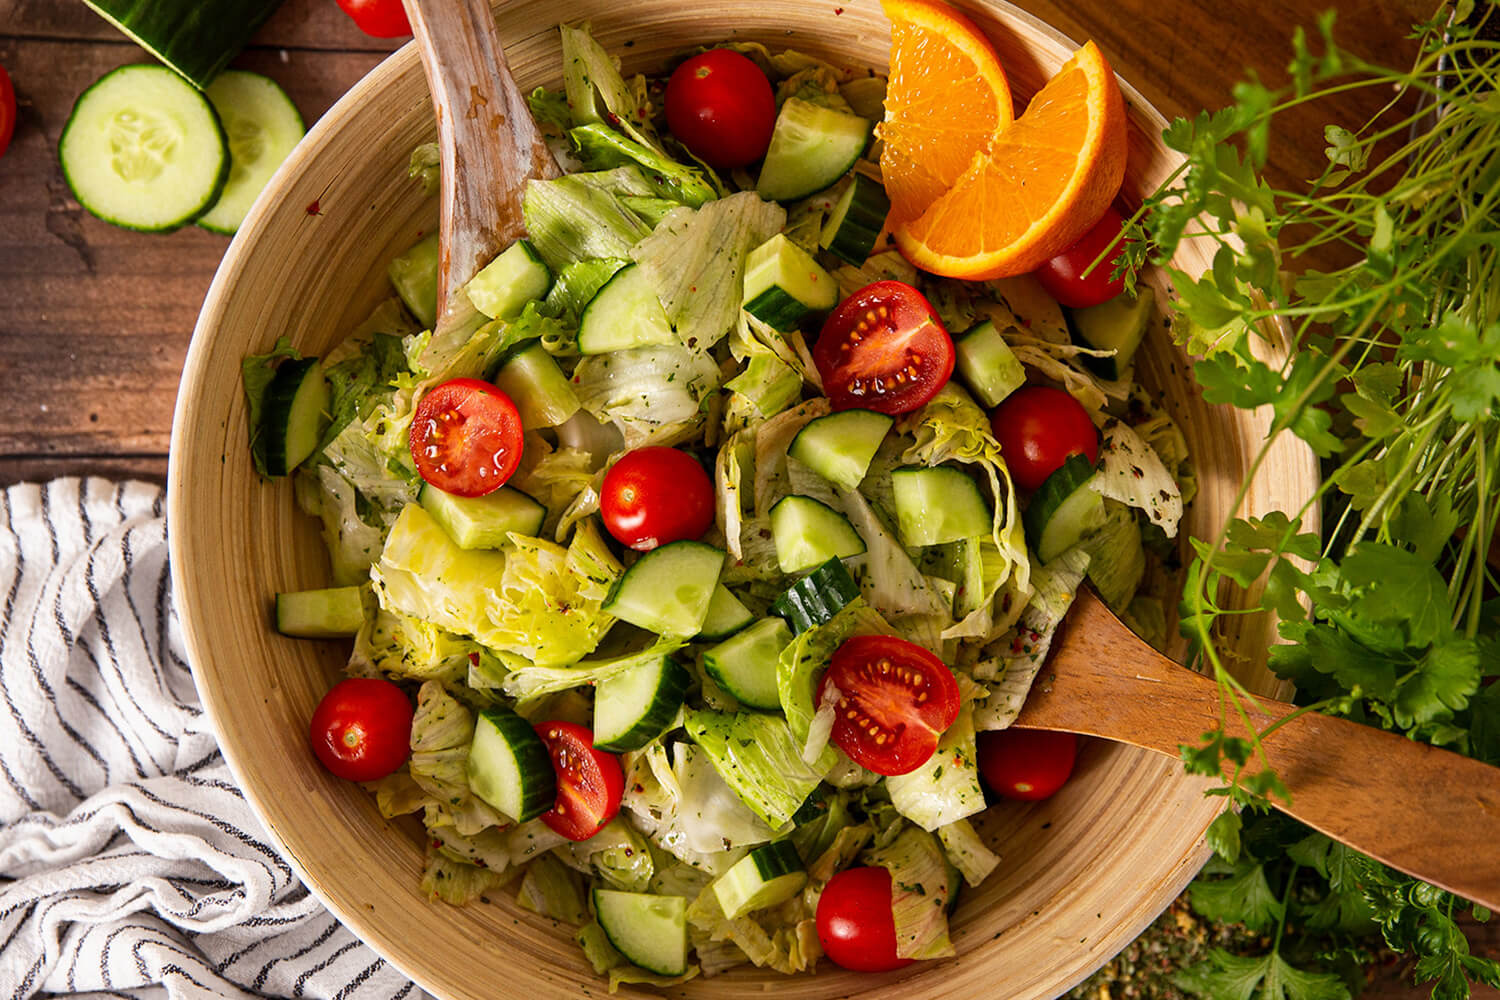 Sommersalat - Neue Bio-Gewürzmischung in Aktion. Schnell und einfach. Im Salat untermischen und leckeren Salat genießen